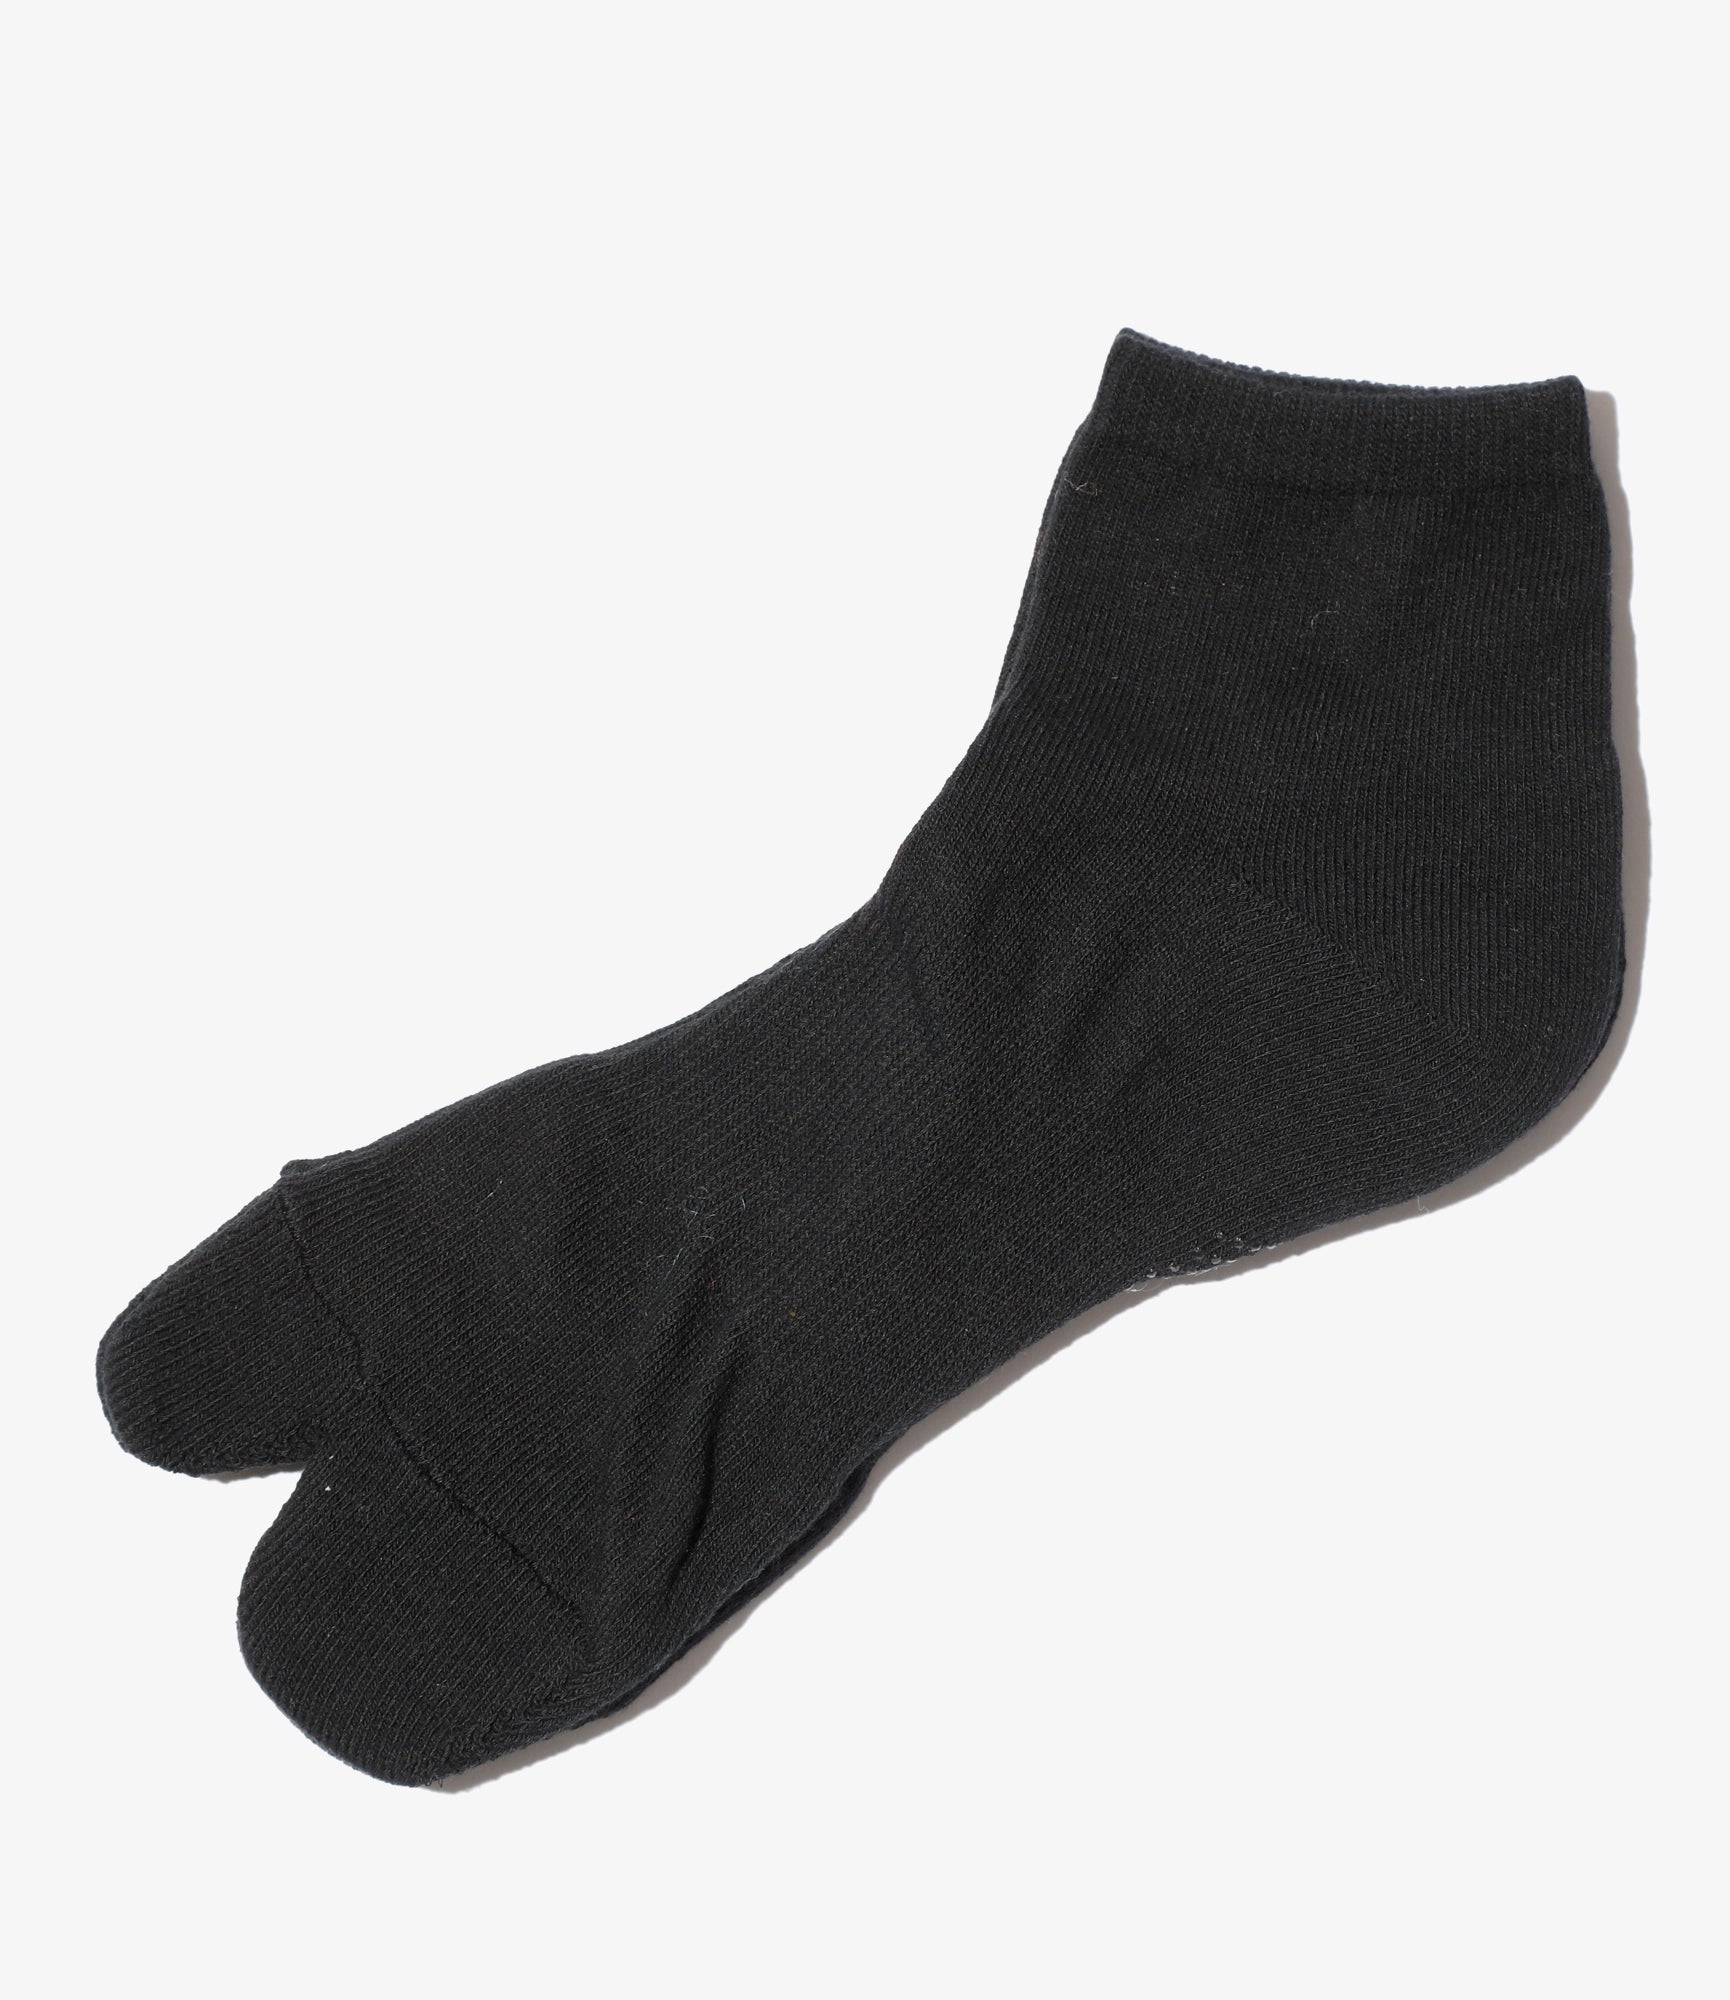 Thumb Ankle Socks - Black - Cool Max